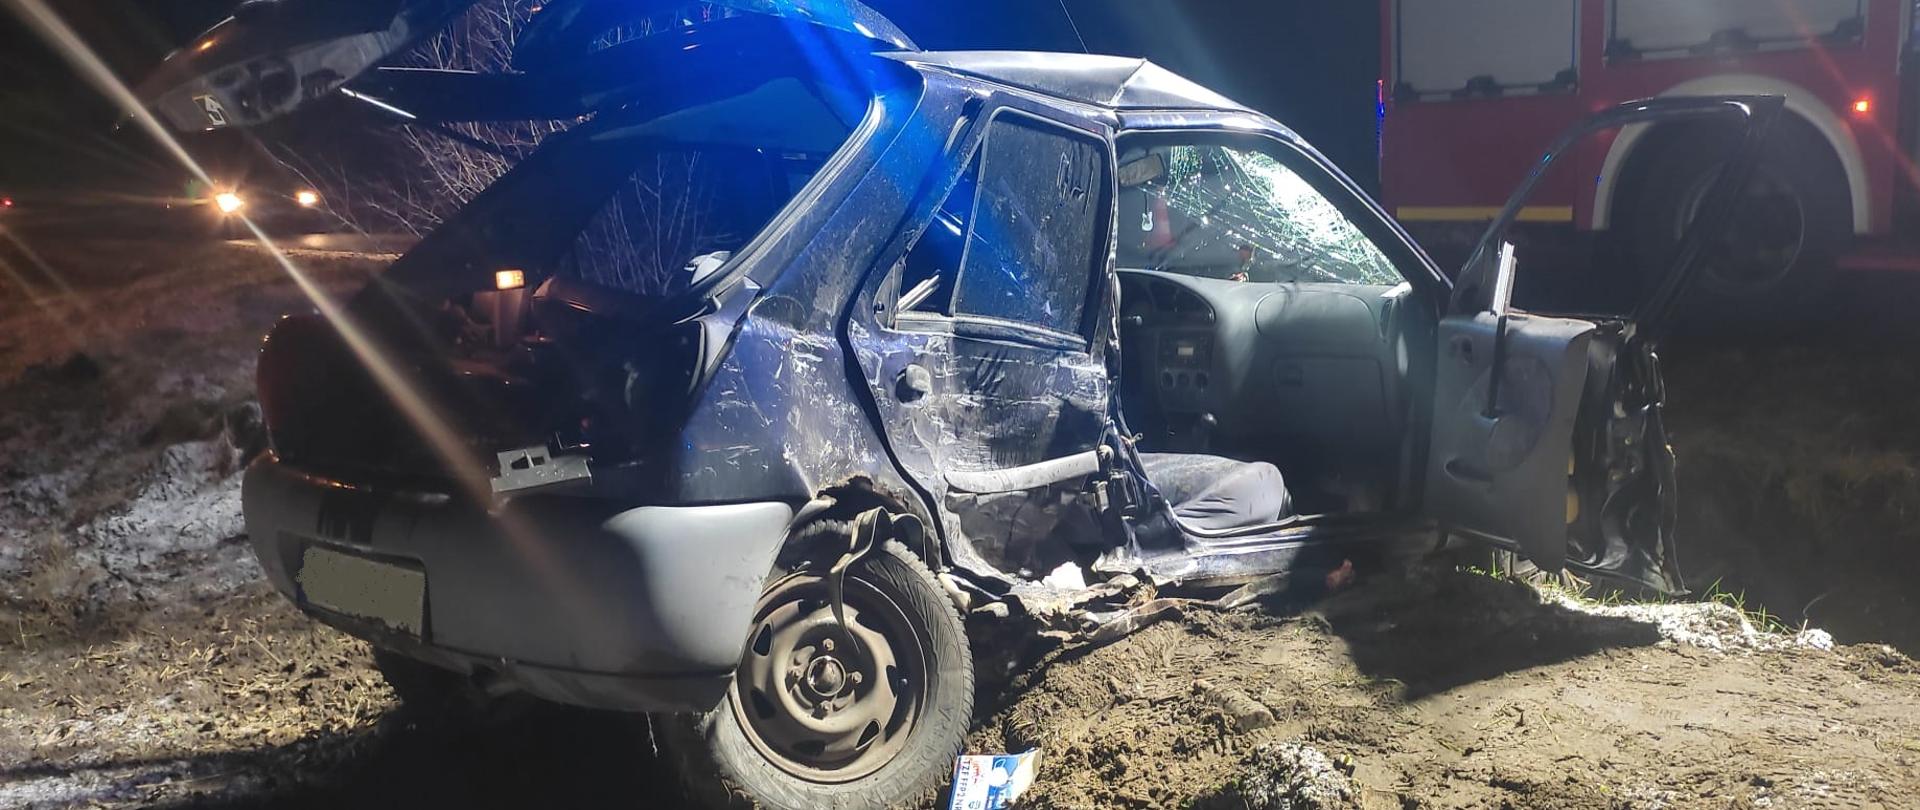 Zdjęcie przedstawia samochód osobowy znajdujący po wypadku. Samochód ma uszkodzony prawy bok.